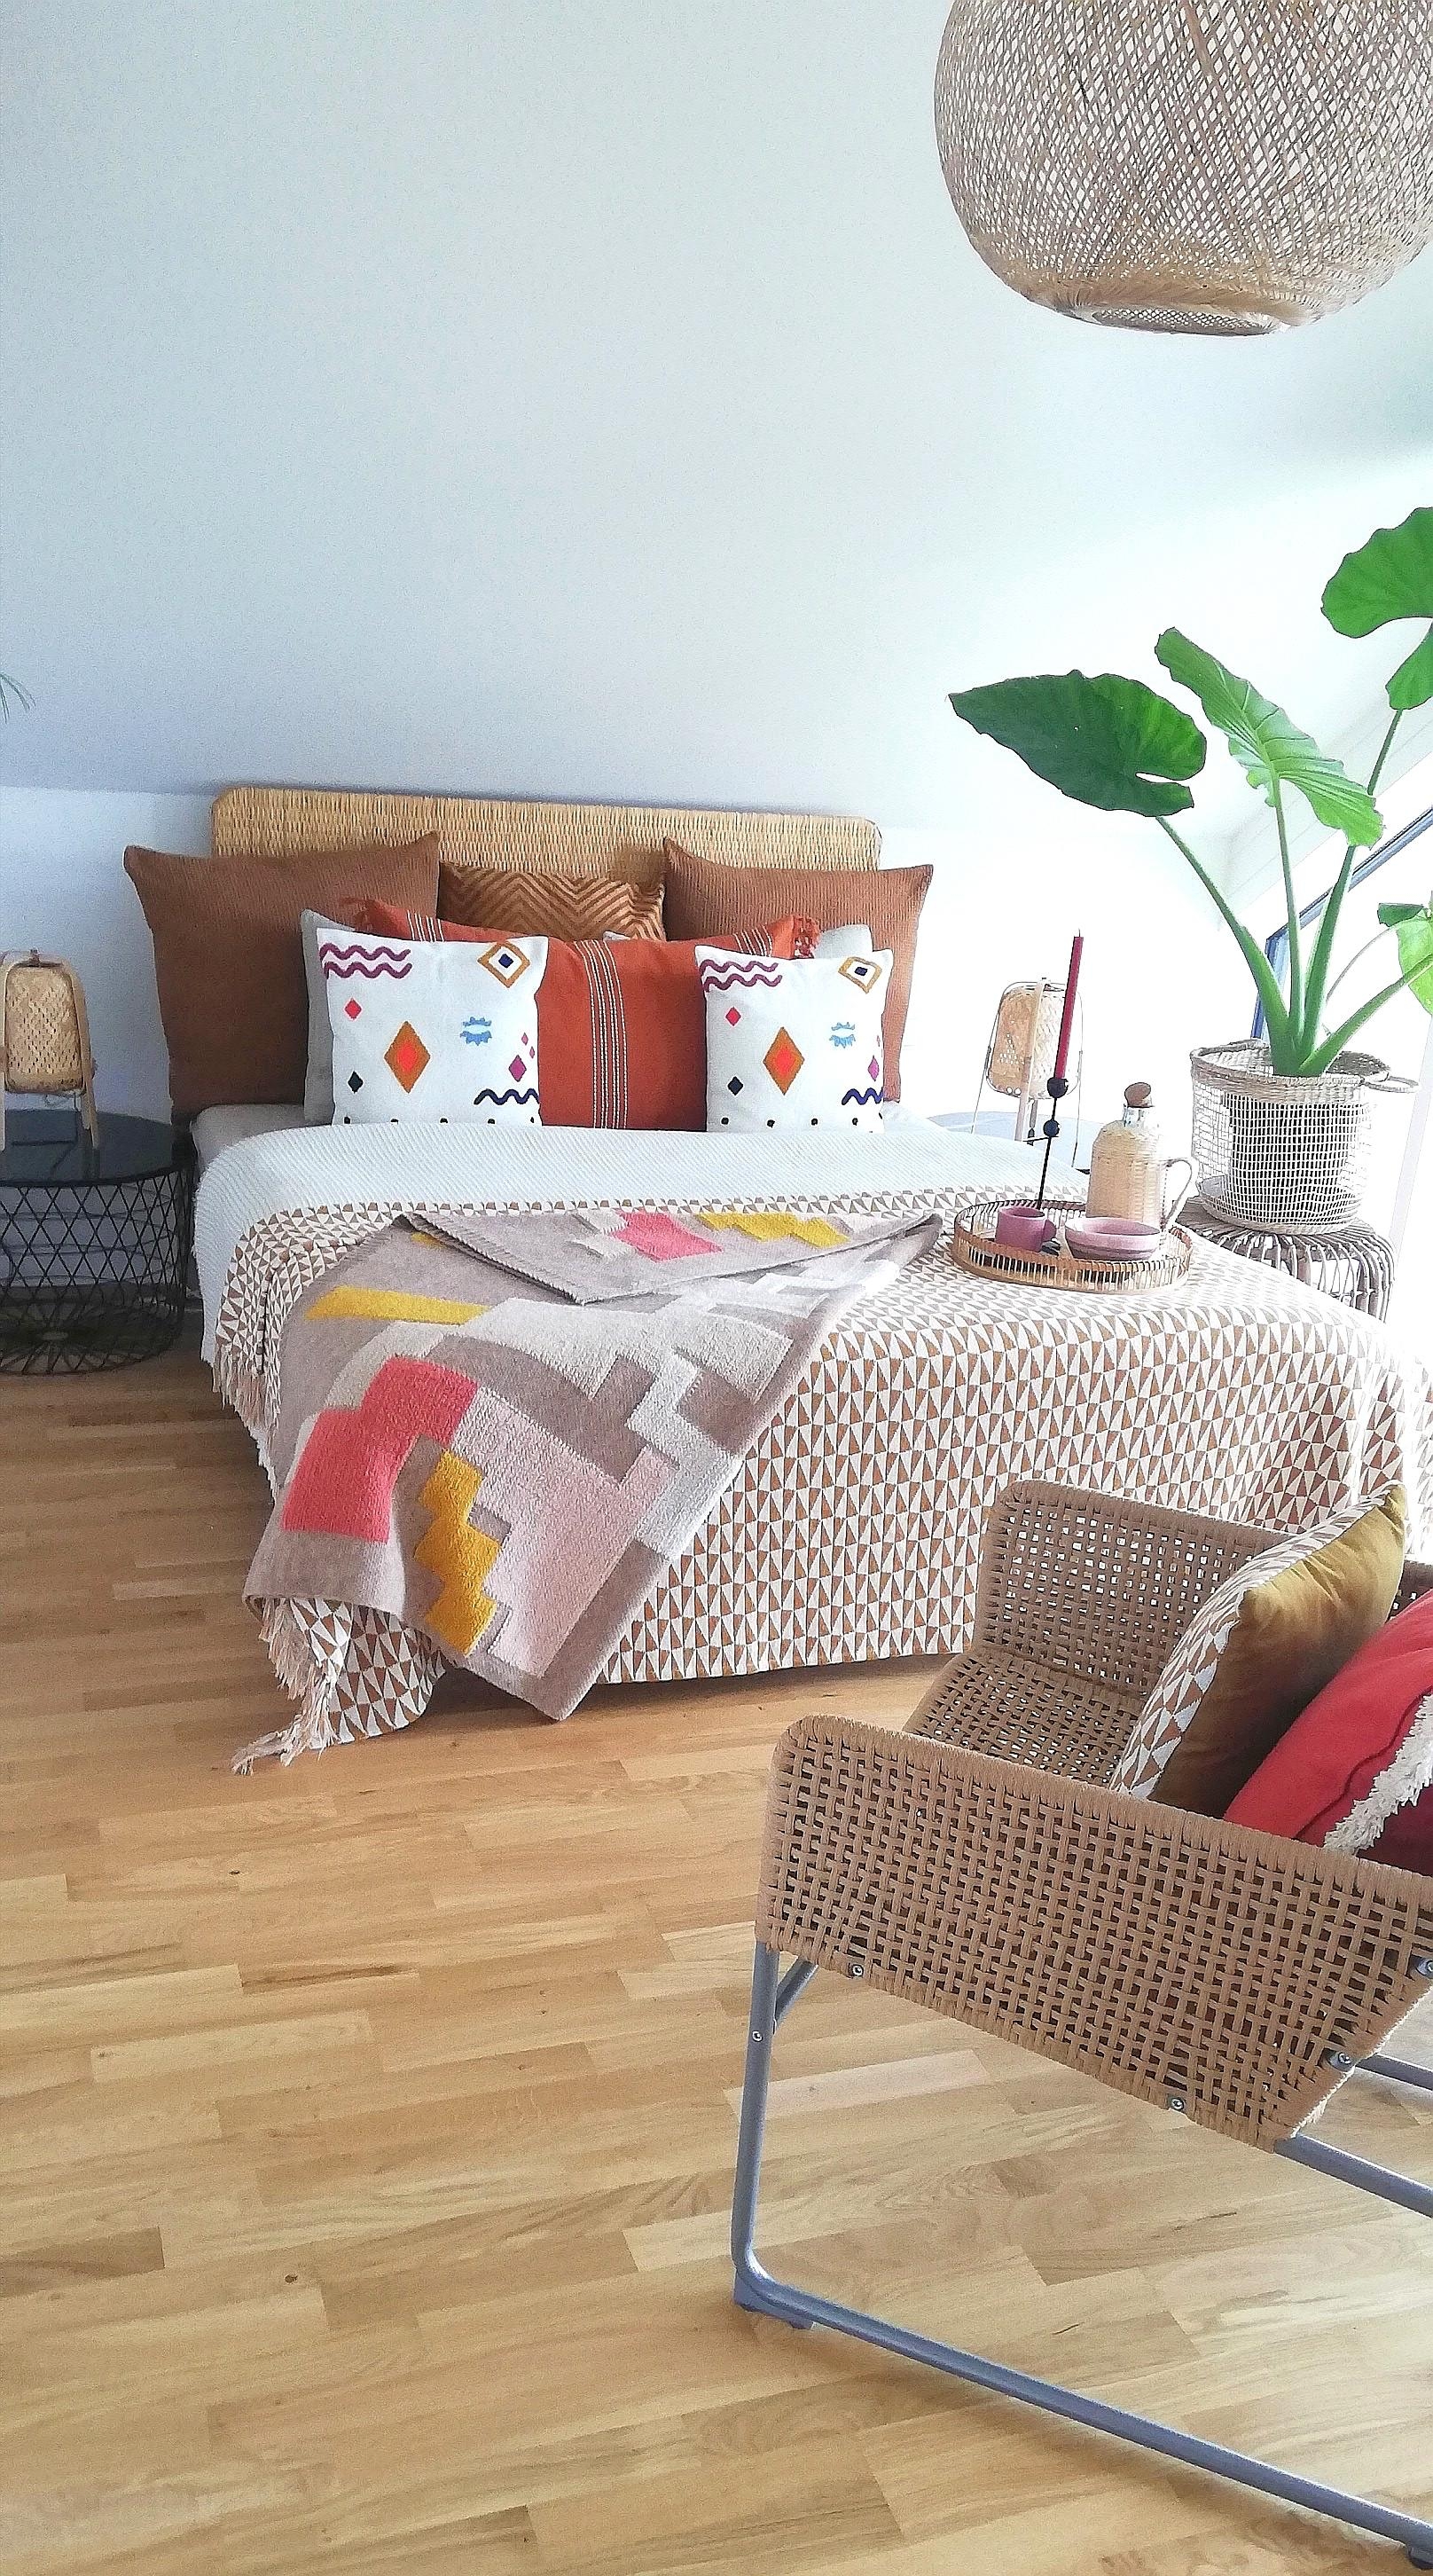 #cozyhome #bohohome #couchliebt #decor #decoration #homesweethome #homestyle #boho #interior #interiordesign #design 